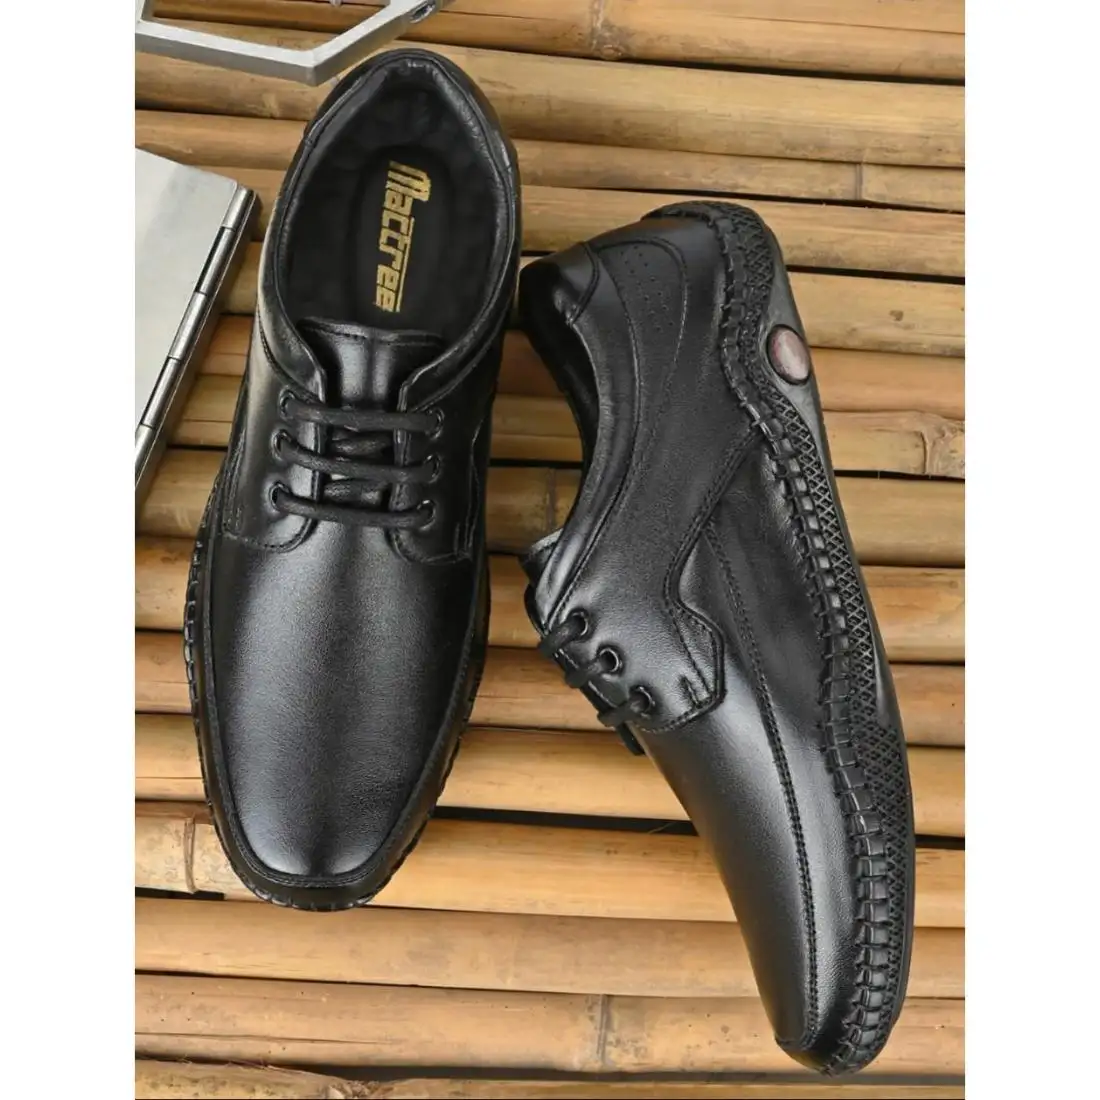 Pabrik kerajinan buatan tangan sepatu Formal kulit murni kualitas Super buatan tangan disesuaikan kulit acara untuk alas kaki pria Aksesori